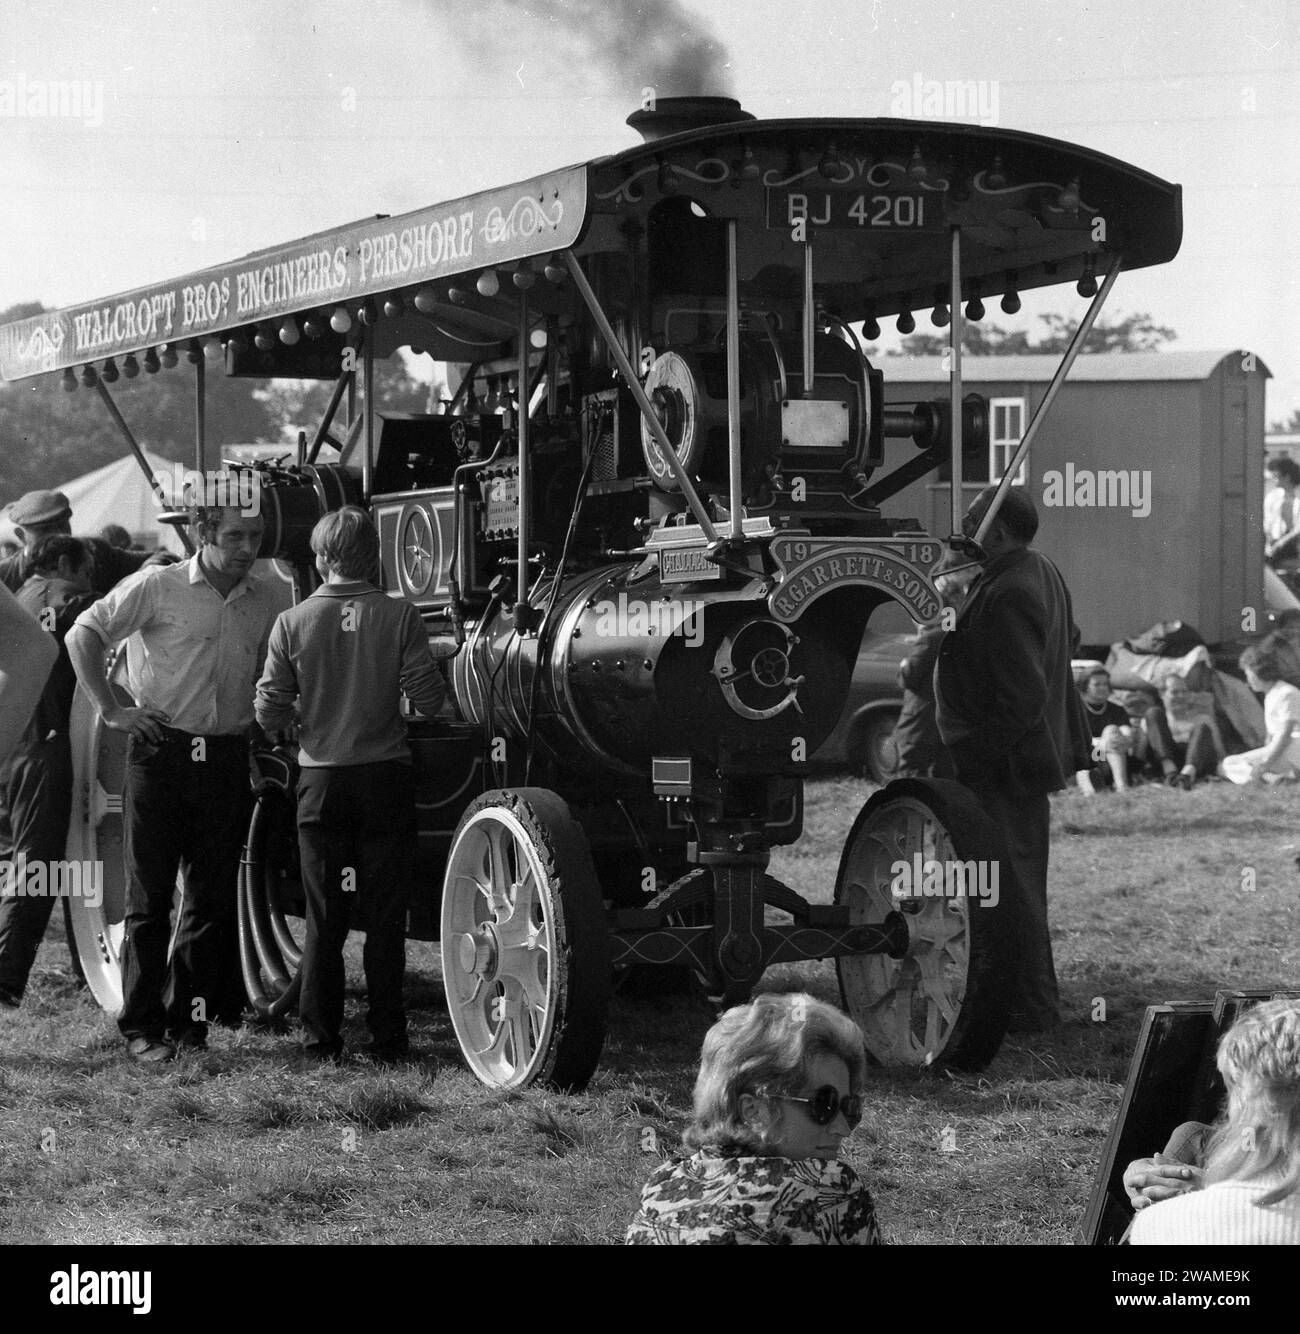 1970er Jahre, historischer, dampfbetriebener Traktor draußen auf einer Dampfmesse, Typenschild vorne R. Garrett & Sons, Nummernschild BJ 4201 aus dem Jahr 1919, bekannt als Challenge. Die Landwirtschaftsingenieure aus Suffolk, England, Richard Garrett & Sons waren berühmt als Hersteller von Dampfmaschinen und Traktoren. Stockfoto